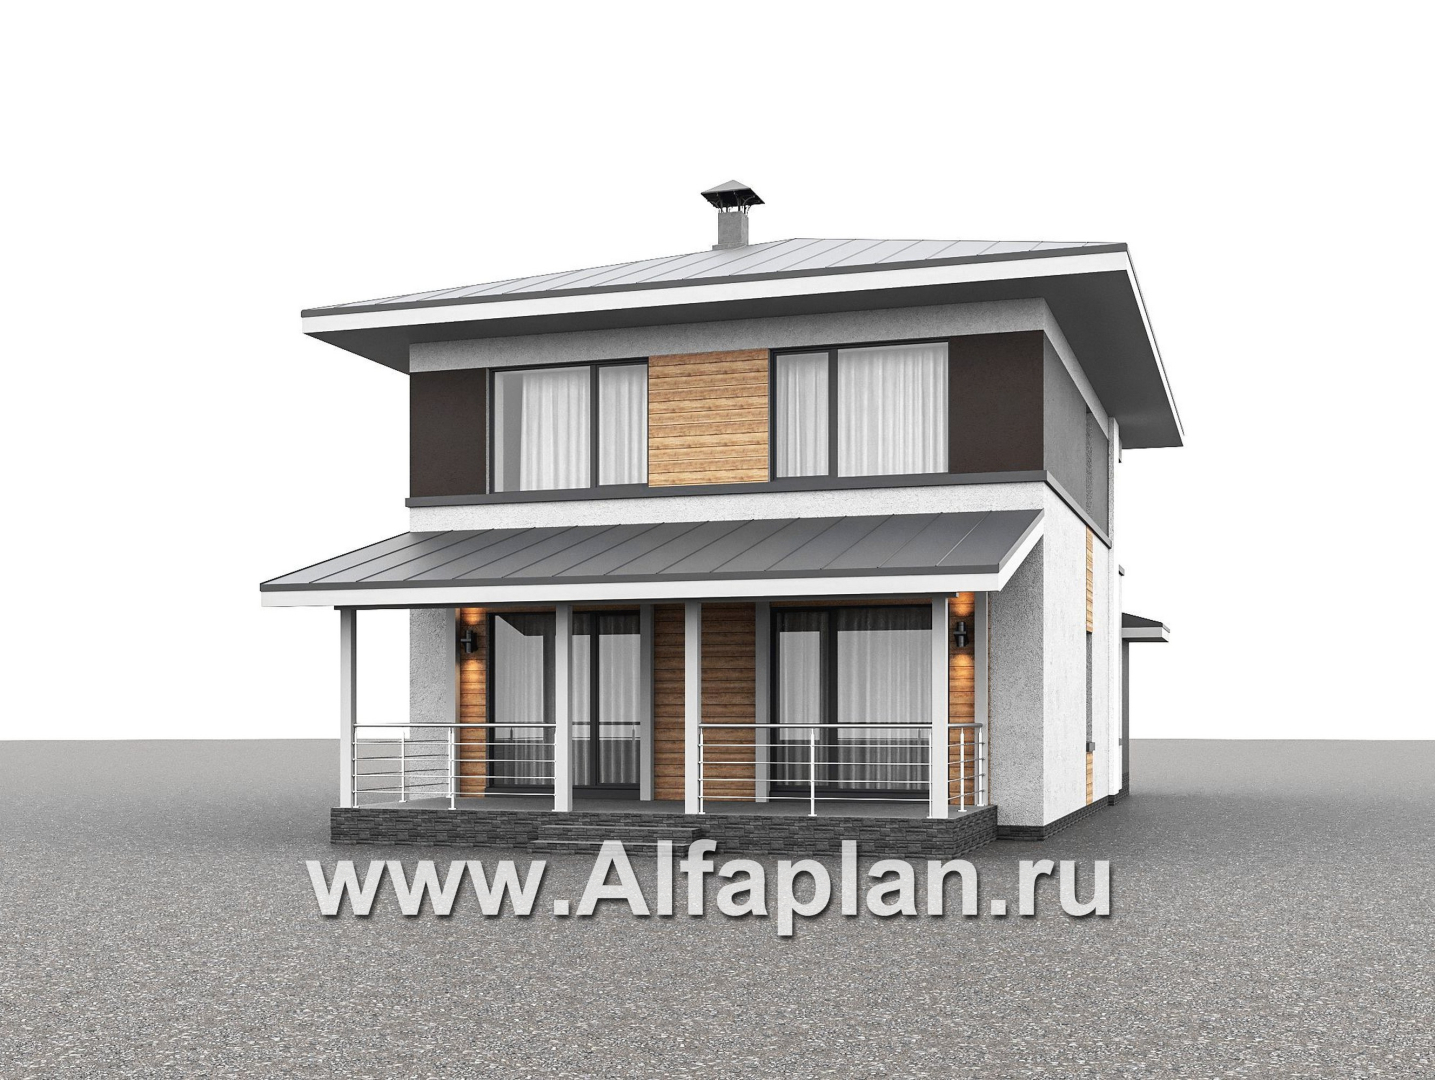 Проекты домов Альфаплан - "Генезис" - проект дома, 2 этажа, с террасой в стиле Райта - дополнительное изображение №2